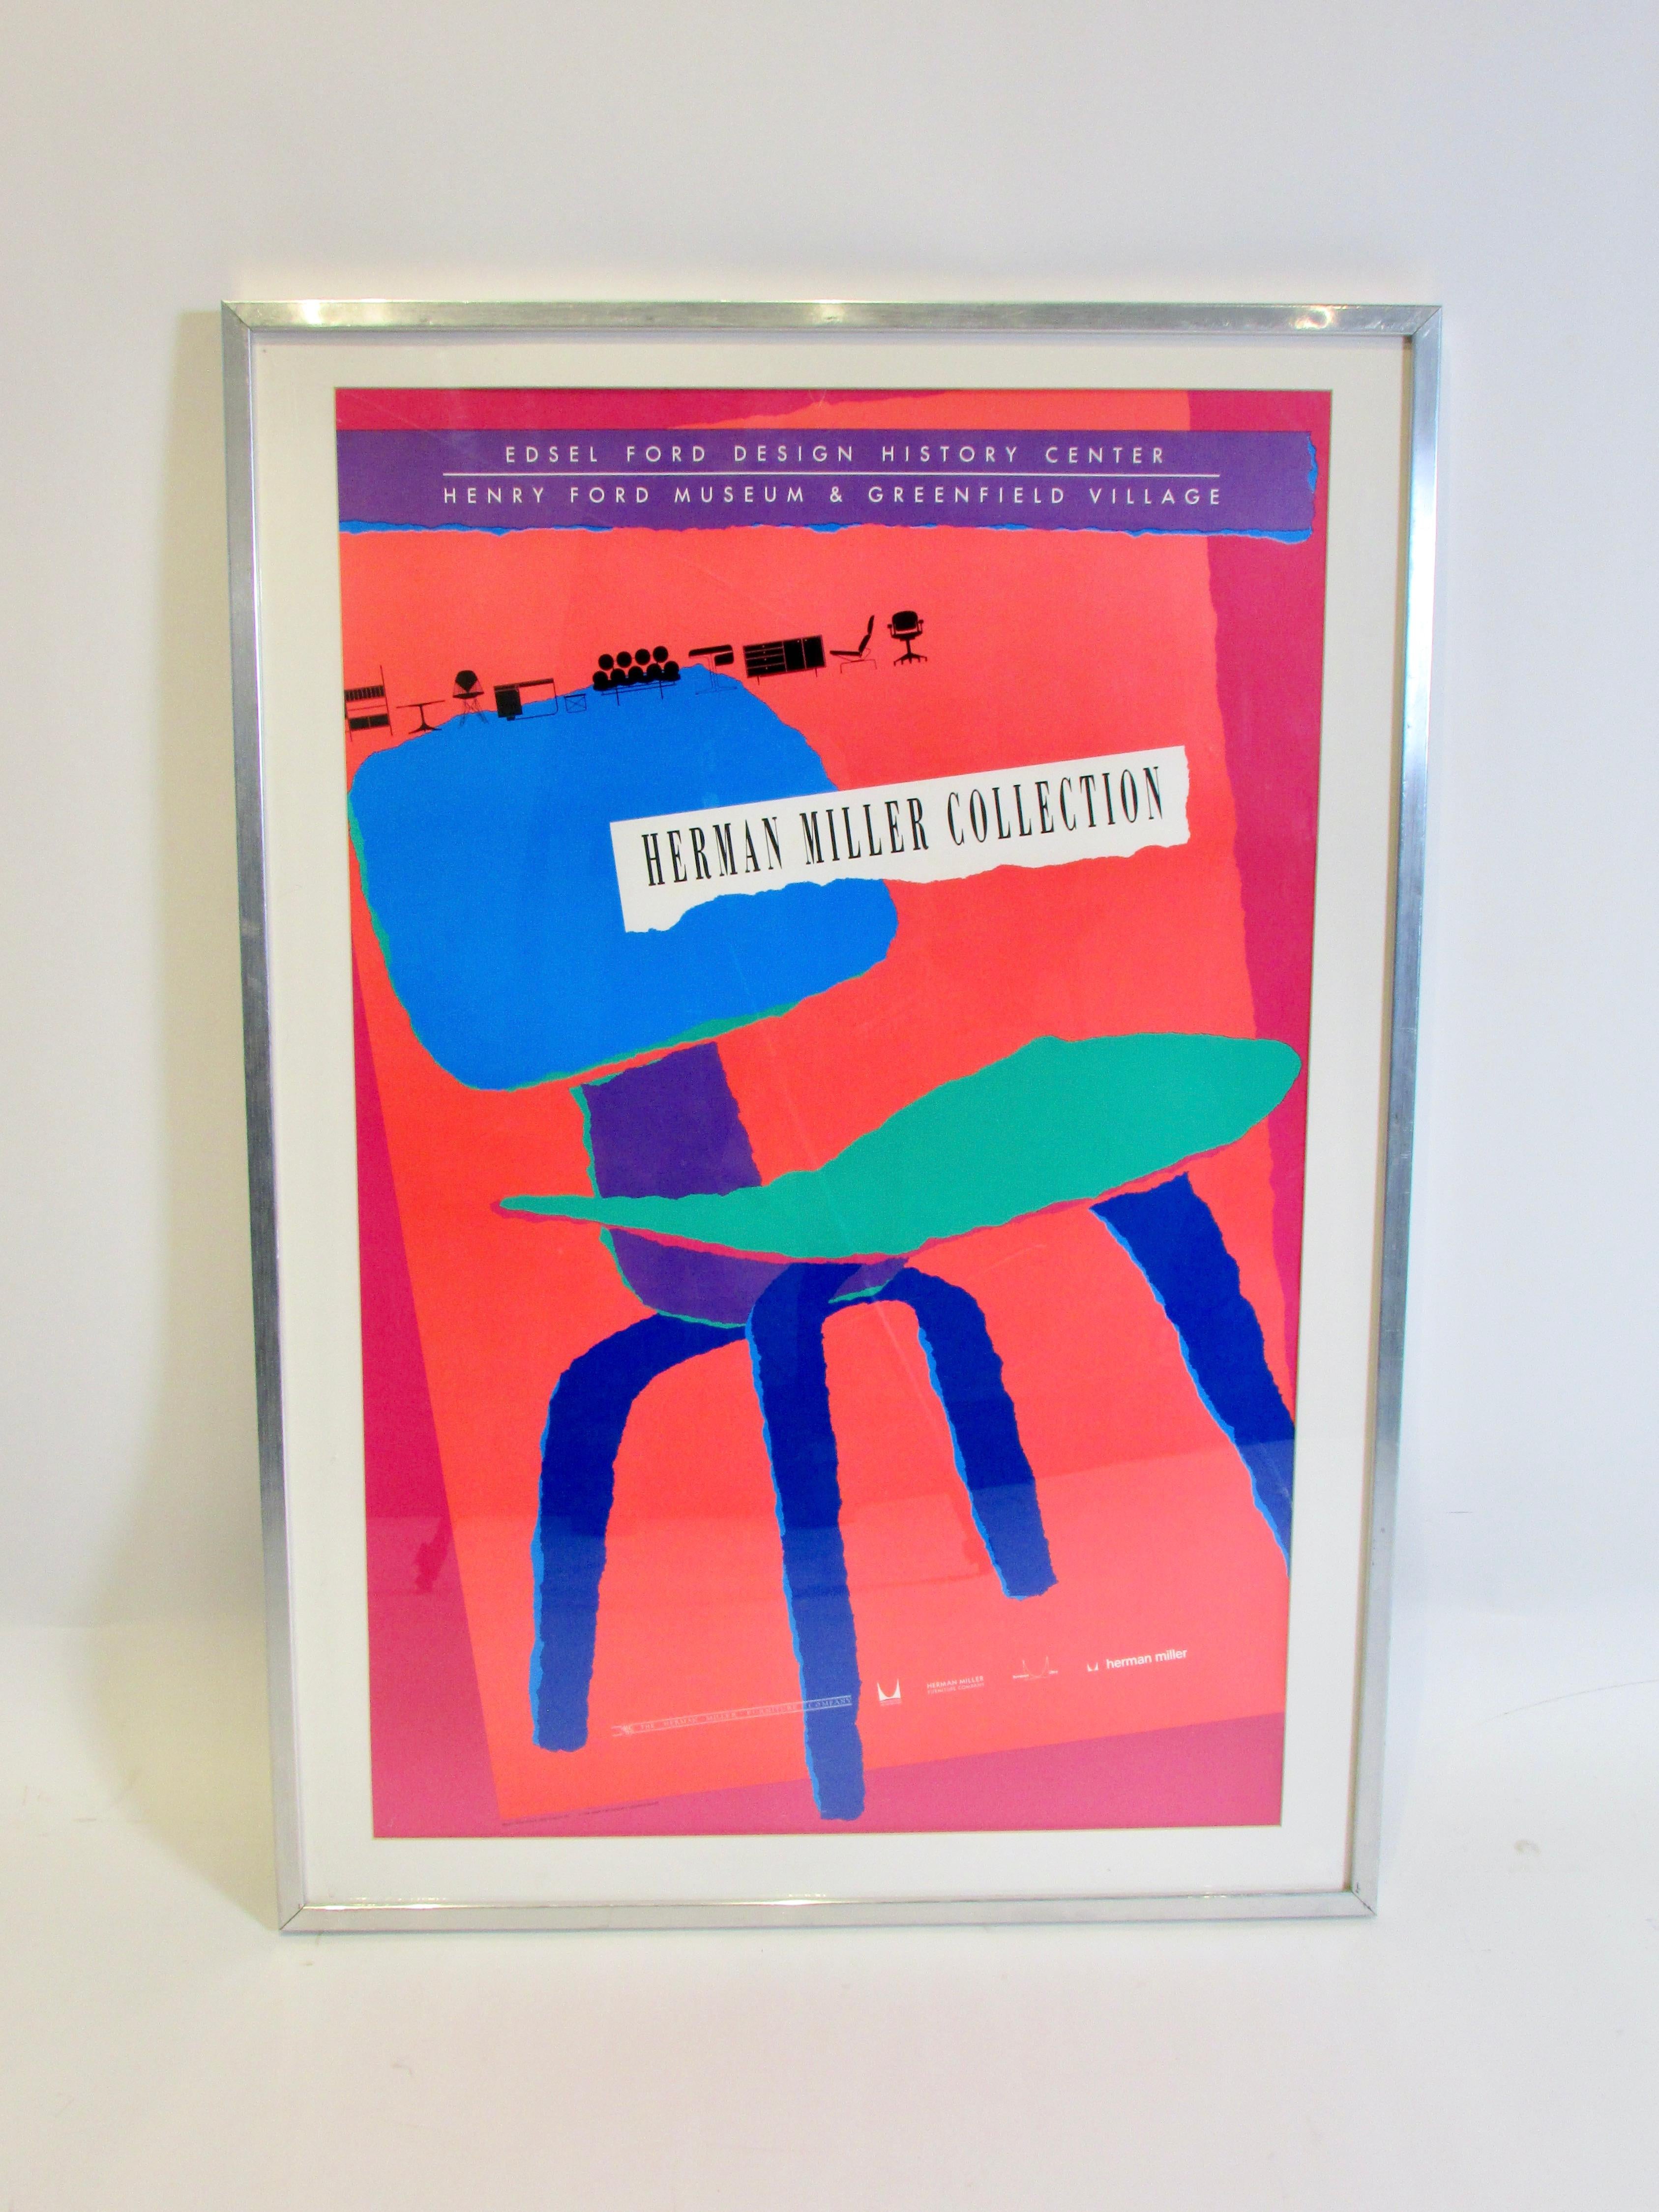 Lebendiges Farbplakat für die Herman Miller Collection im Henry Ford Museum in Dearborn Mi.  Markiertes Design von Linda Powell Herman Miller aus dem Jahr 1989 .